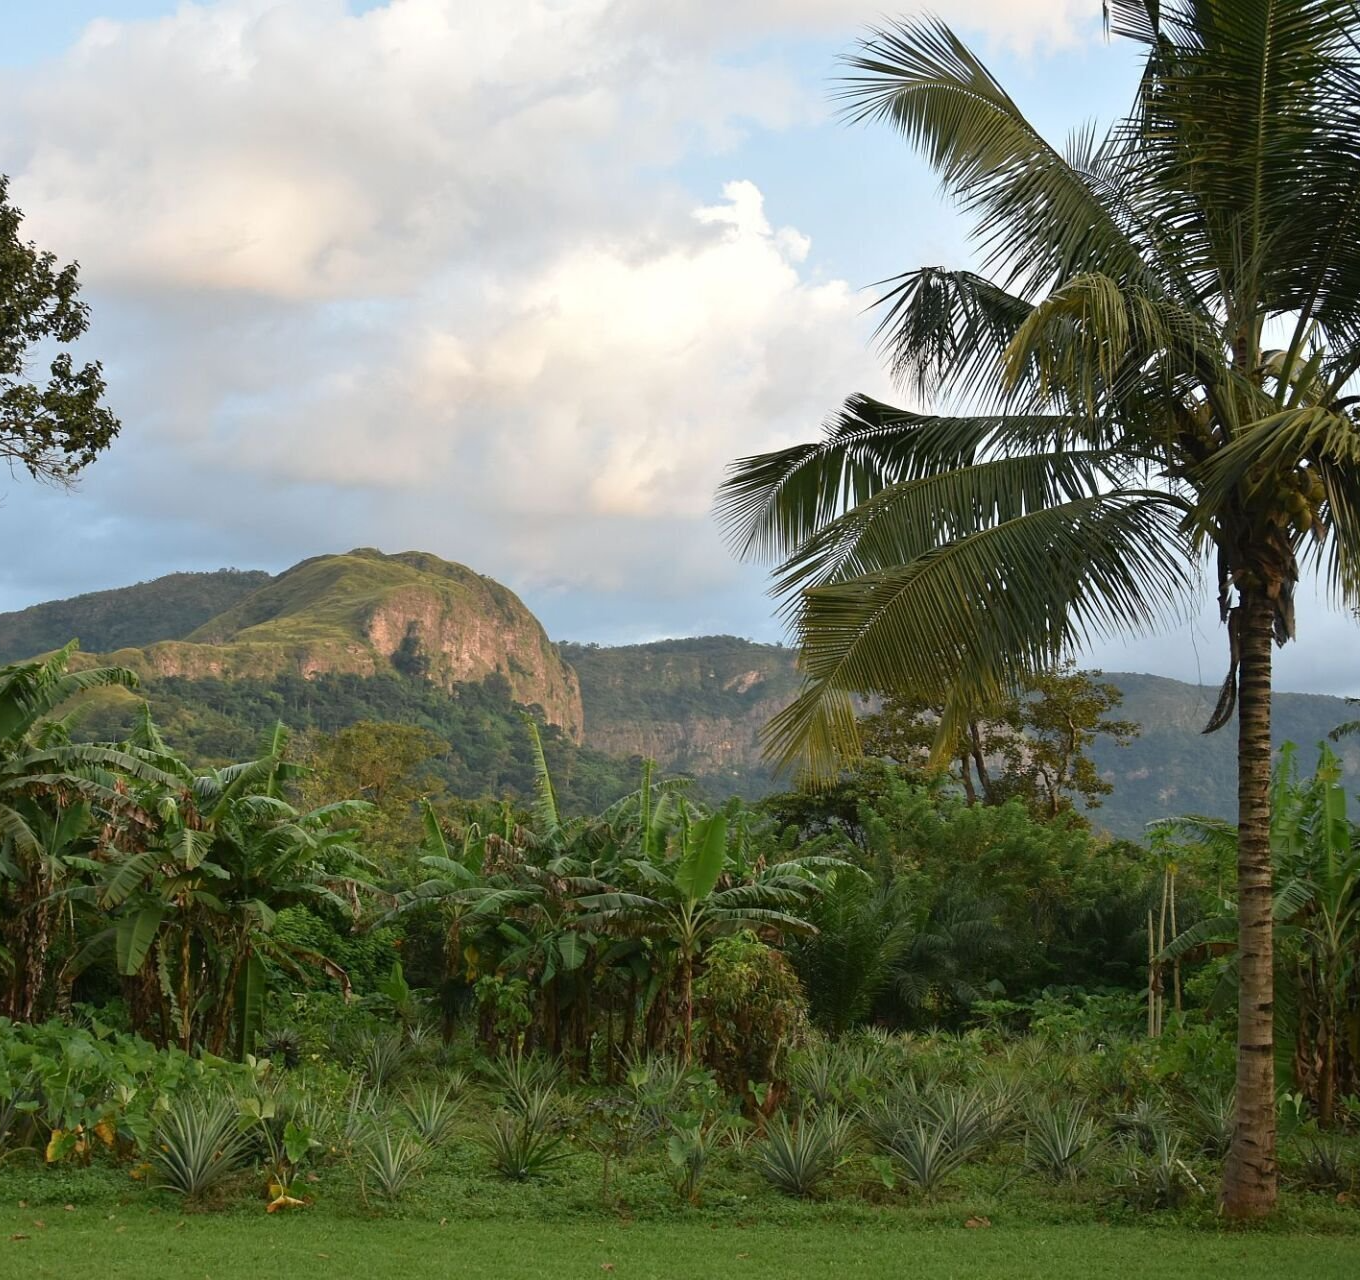 Blick über Palmen, Regenwald und Berge von Ghana nach Togo